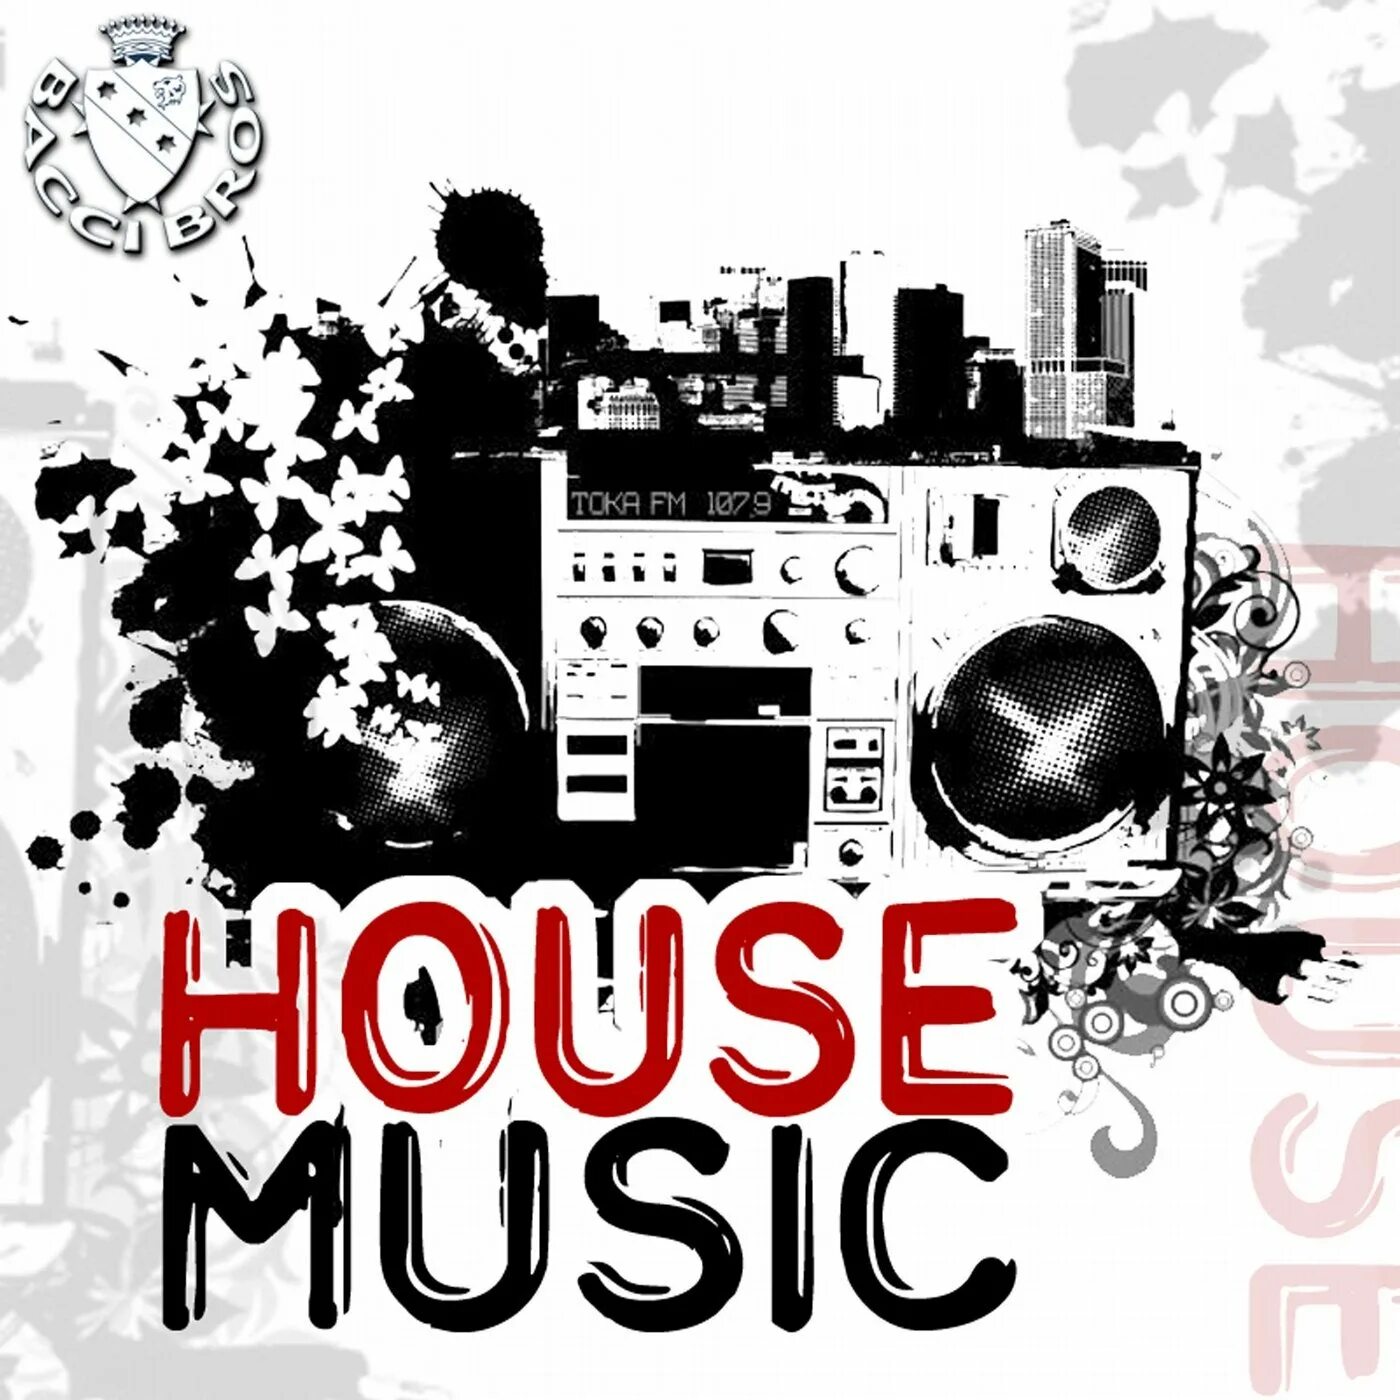 Музыкальный стиль House. House Music картинки. Хаус Жанр. Музыкальный стиль Хаус в рисунках. Музыка house music